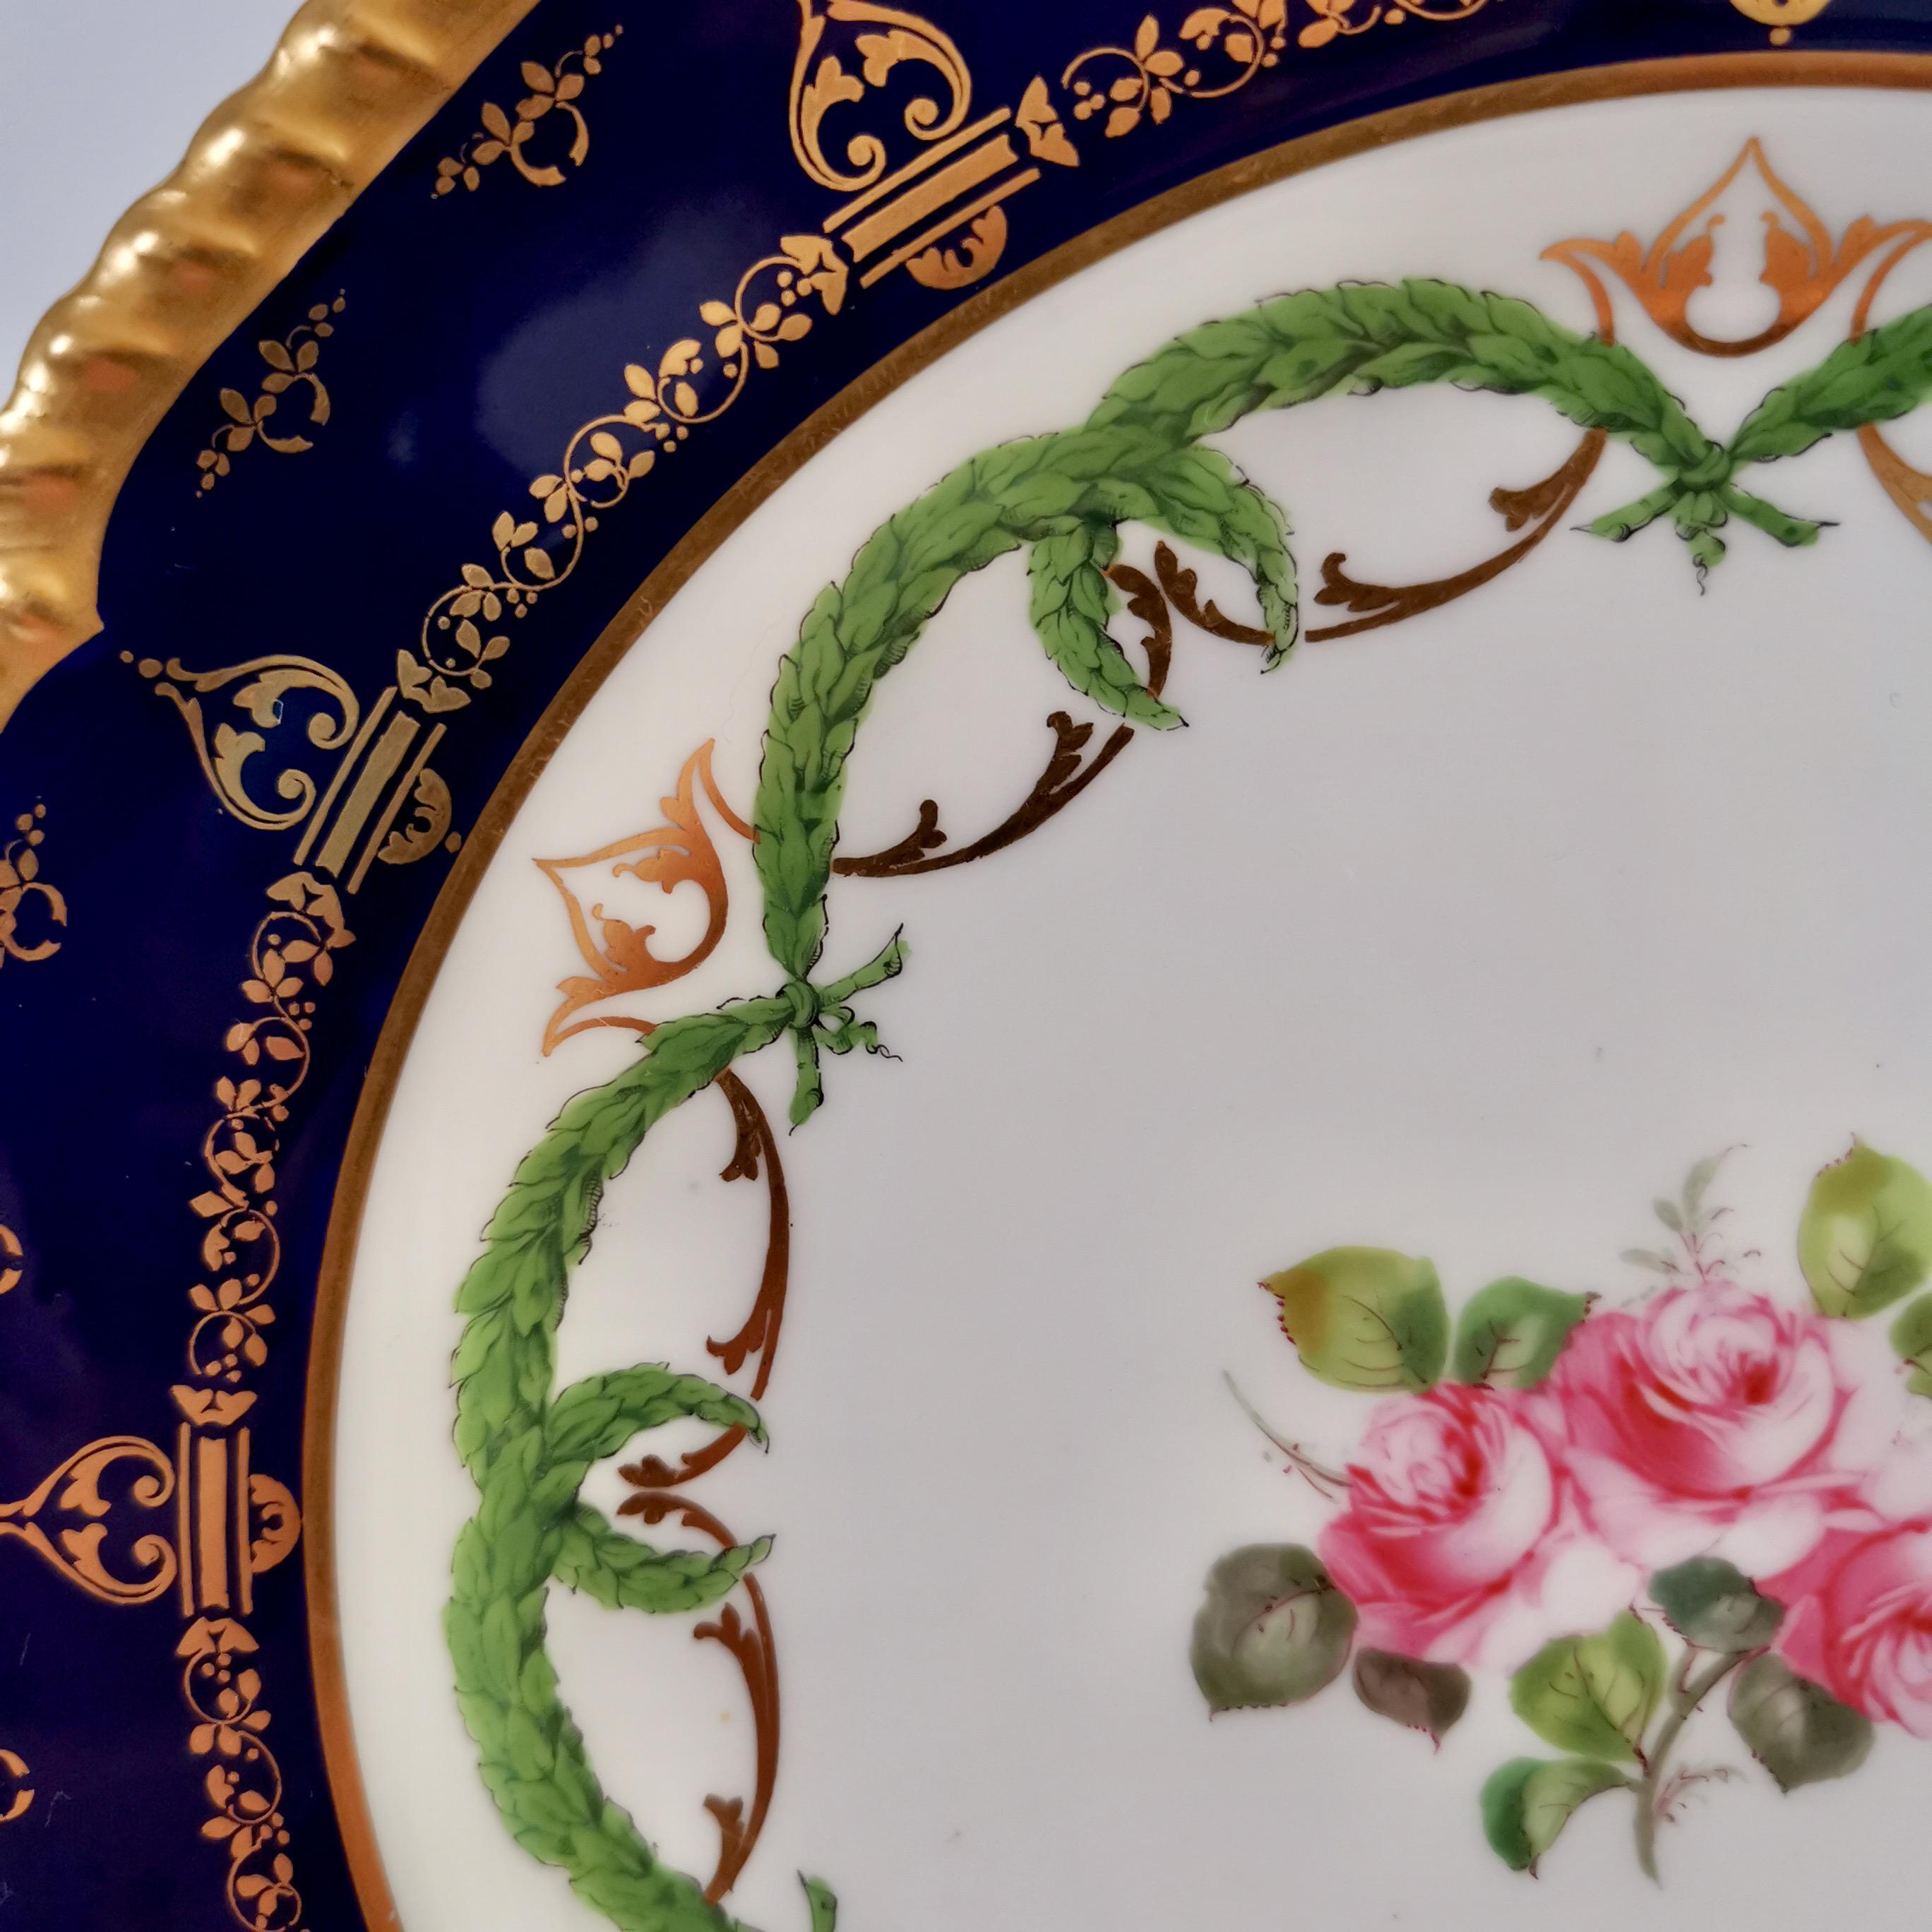 English Royal Crown Derby Porcelain Plate, Cobalt Blue, Gilt and Billingsley Roses, 1907